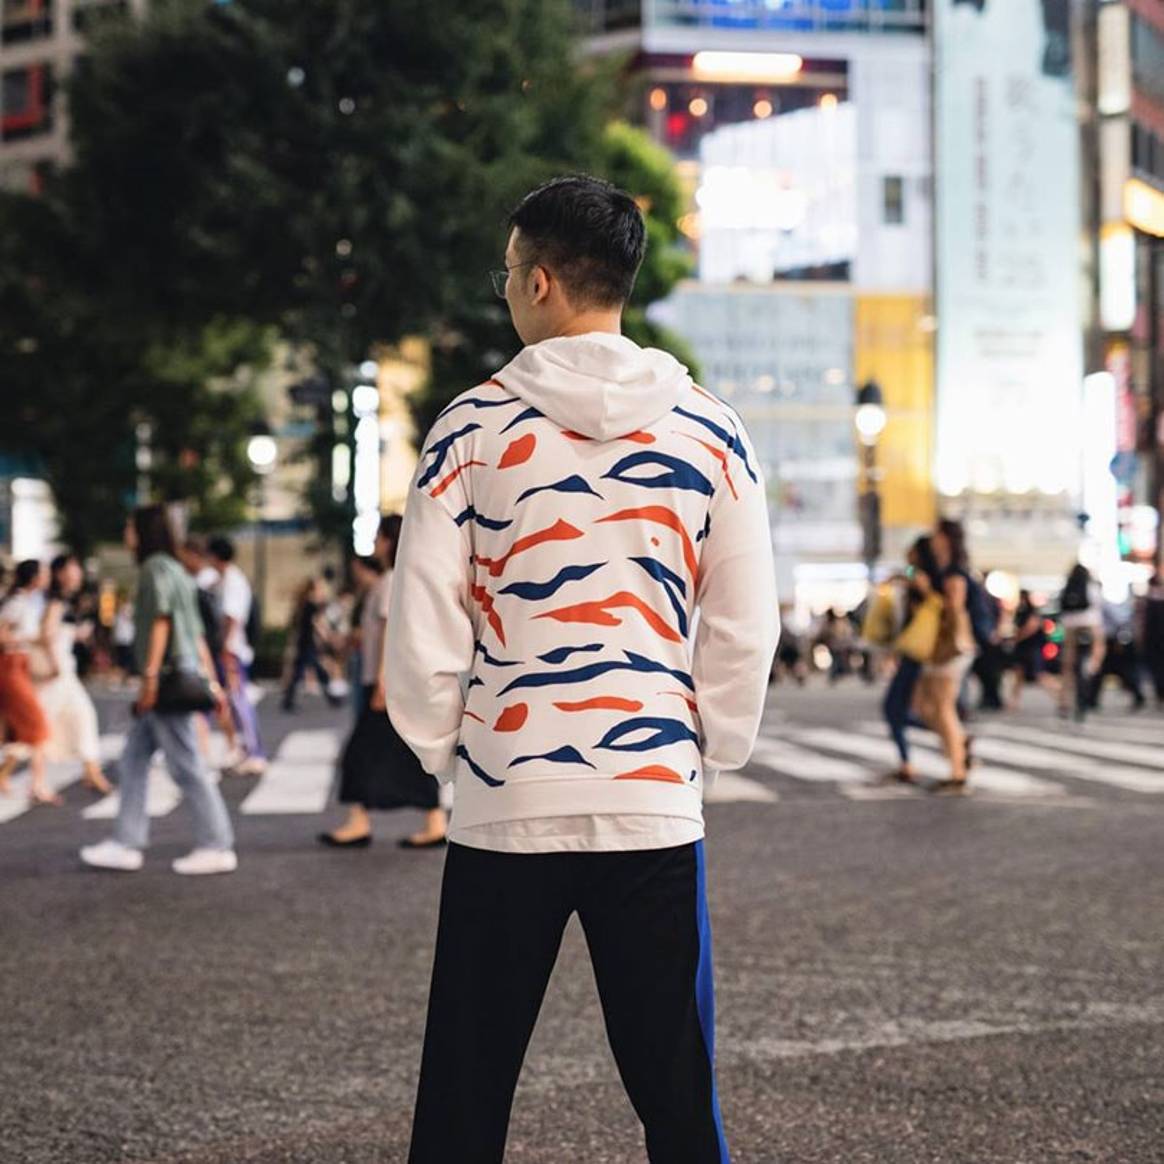 Люксовый бренд одежды Kenzo выпустил коллекцию в поддержку тигров